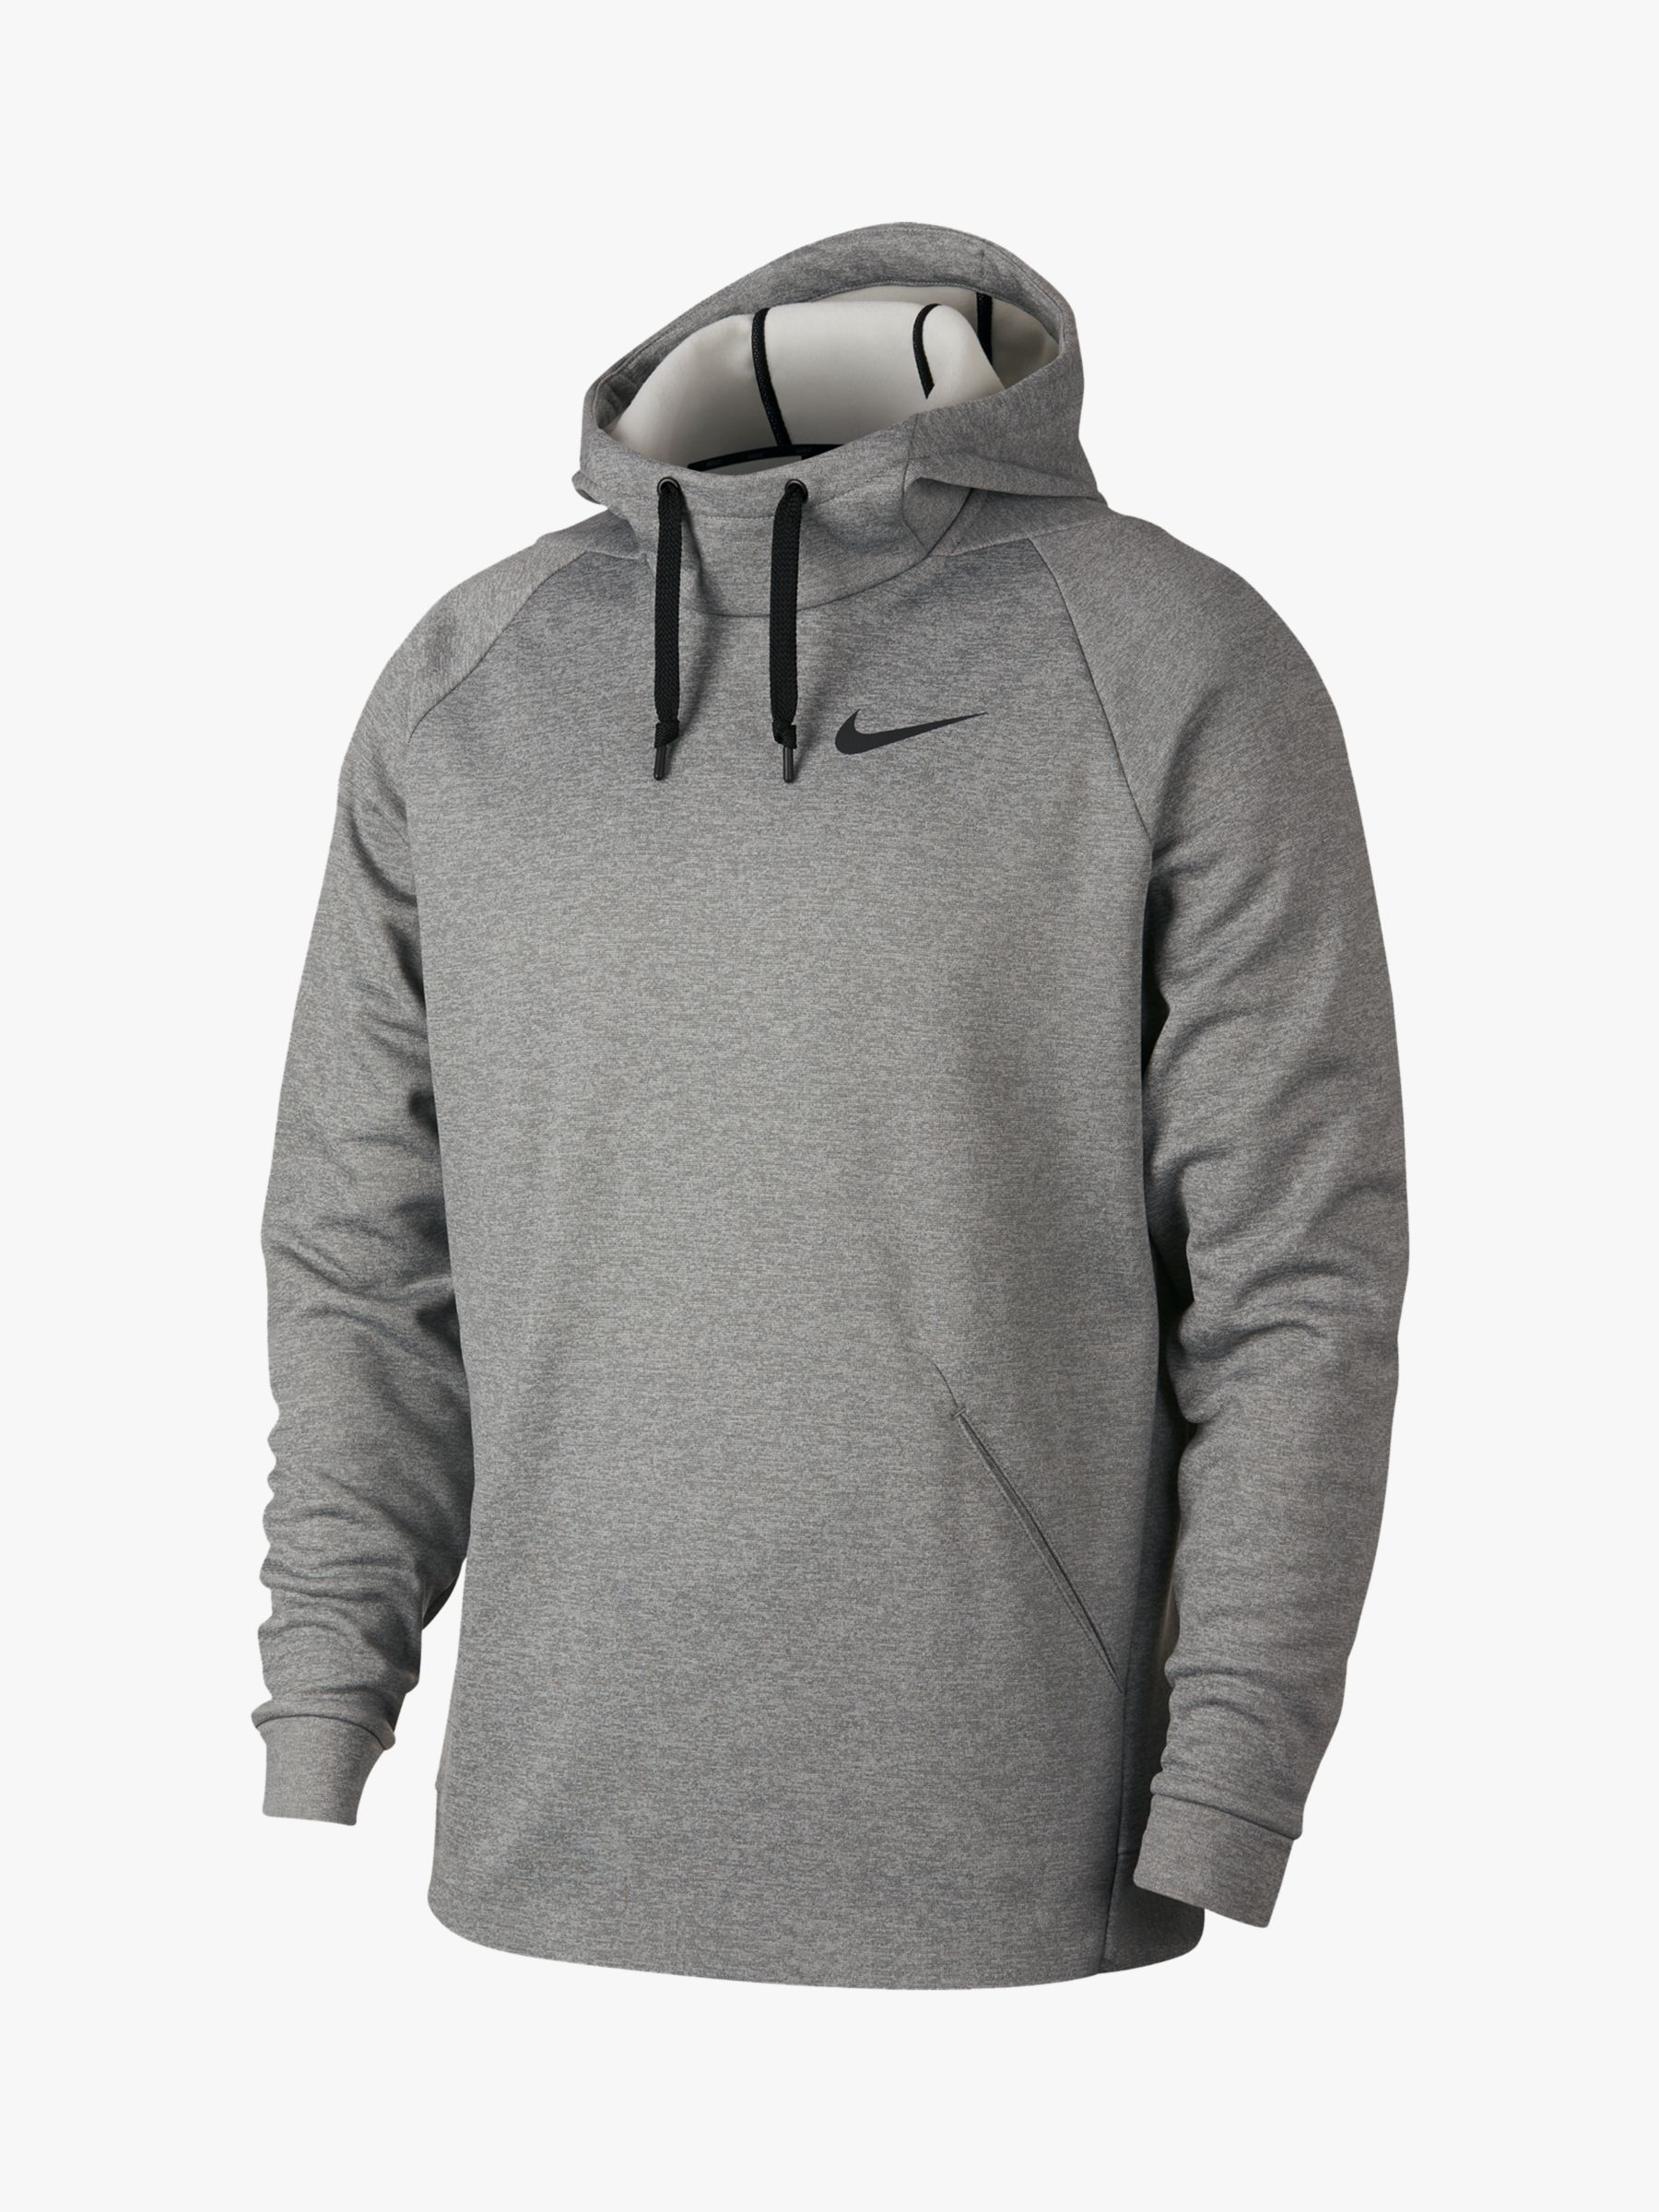 grey nike therma hoodie